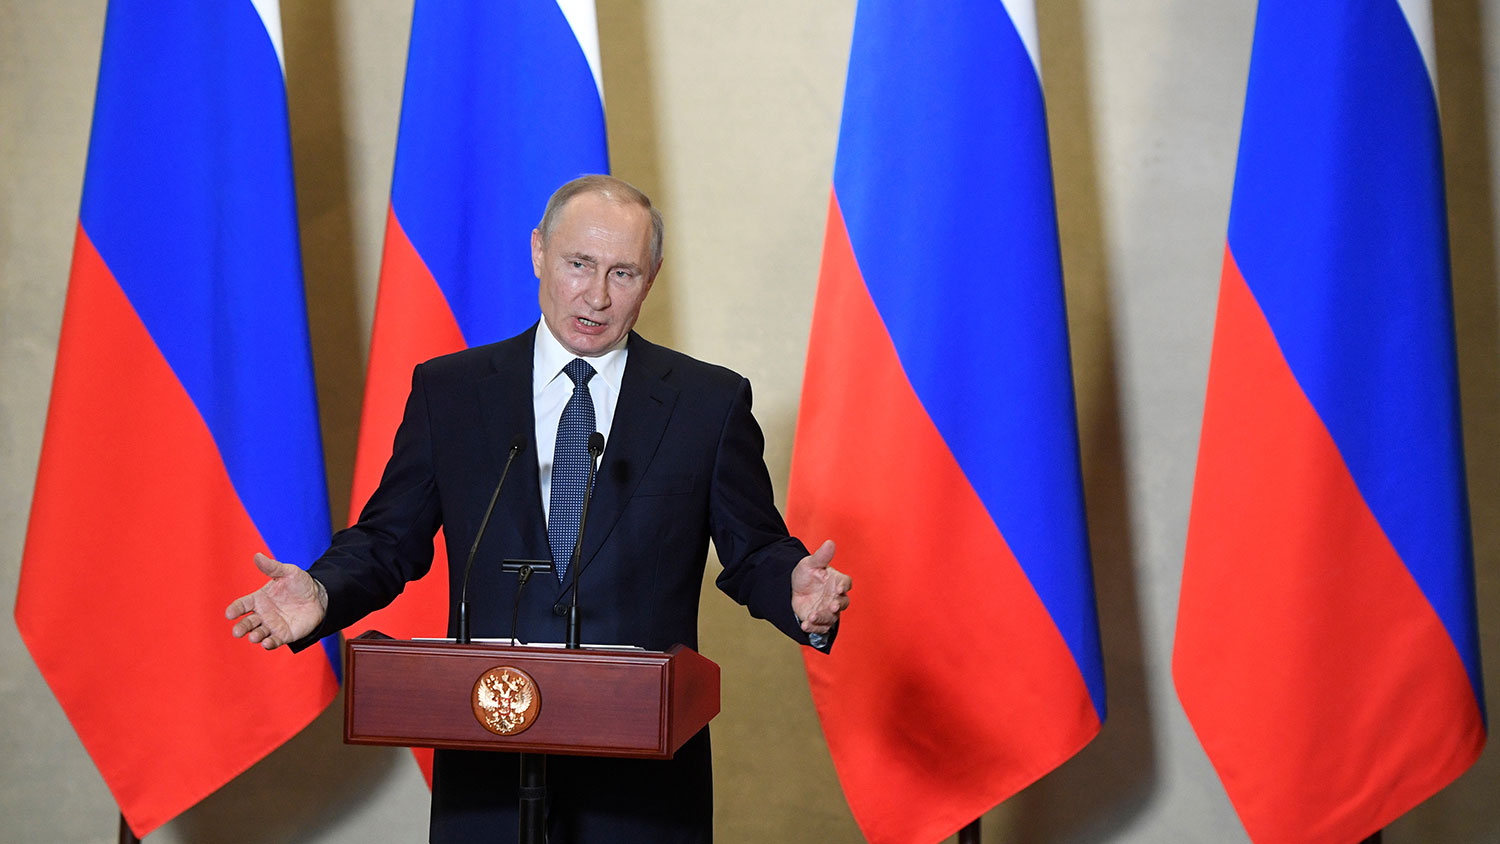 В МИД Украины отреагировали на визит Путина в Крым: "Его туда никто не приглашал"